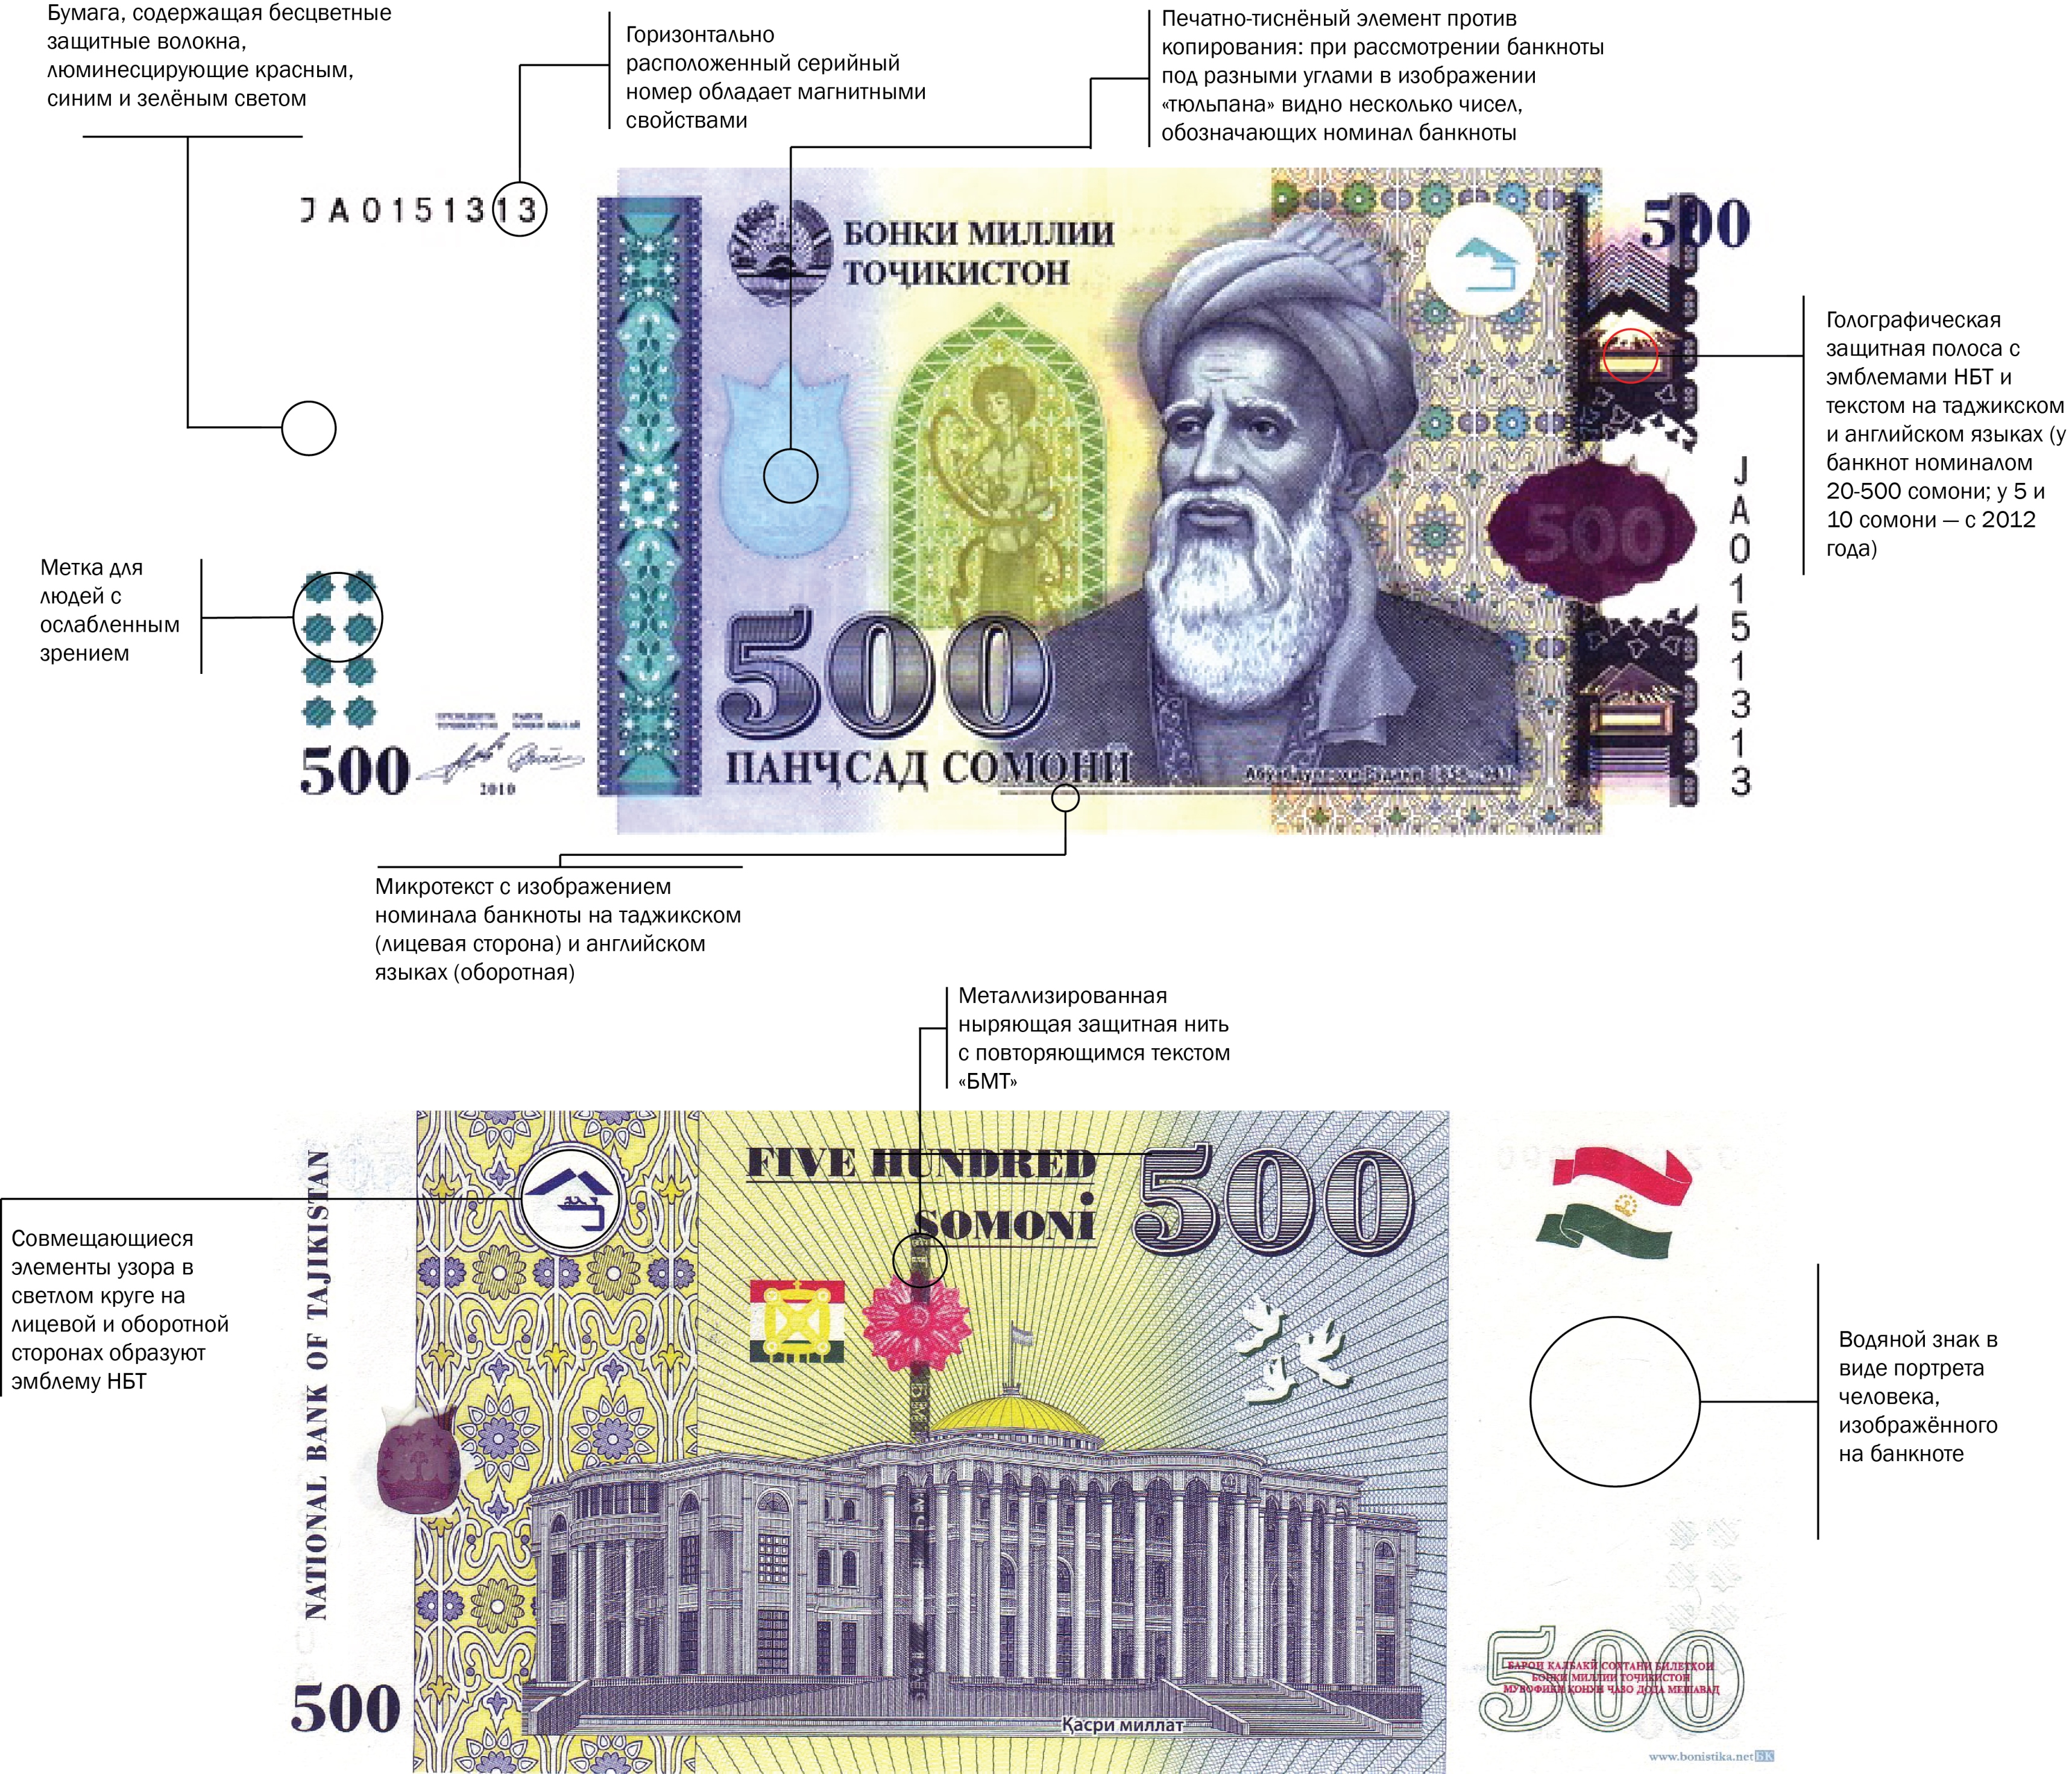 Валют рубл таджикистане сомони. 1000 Сомони купюра картина. Валюта Таджикистана 1000 Сомони. Банкноты Сомони Таджикистана. Купюра Таджикистанский Сомони.